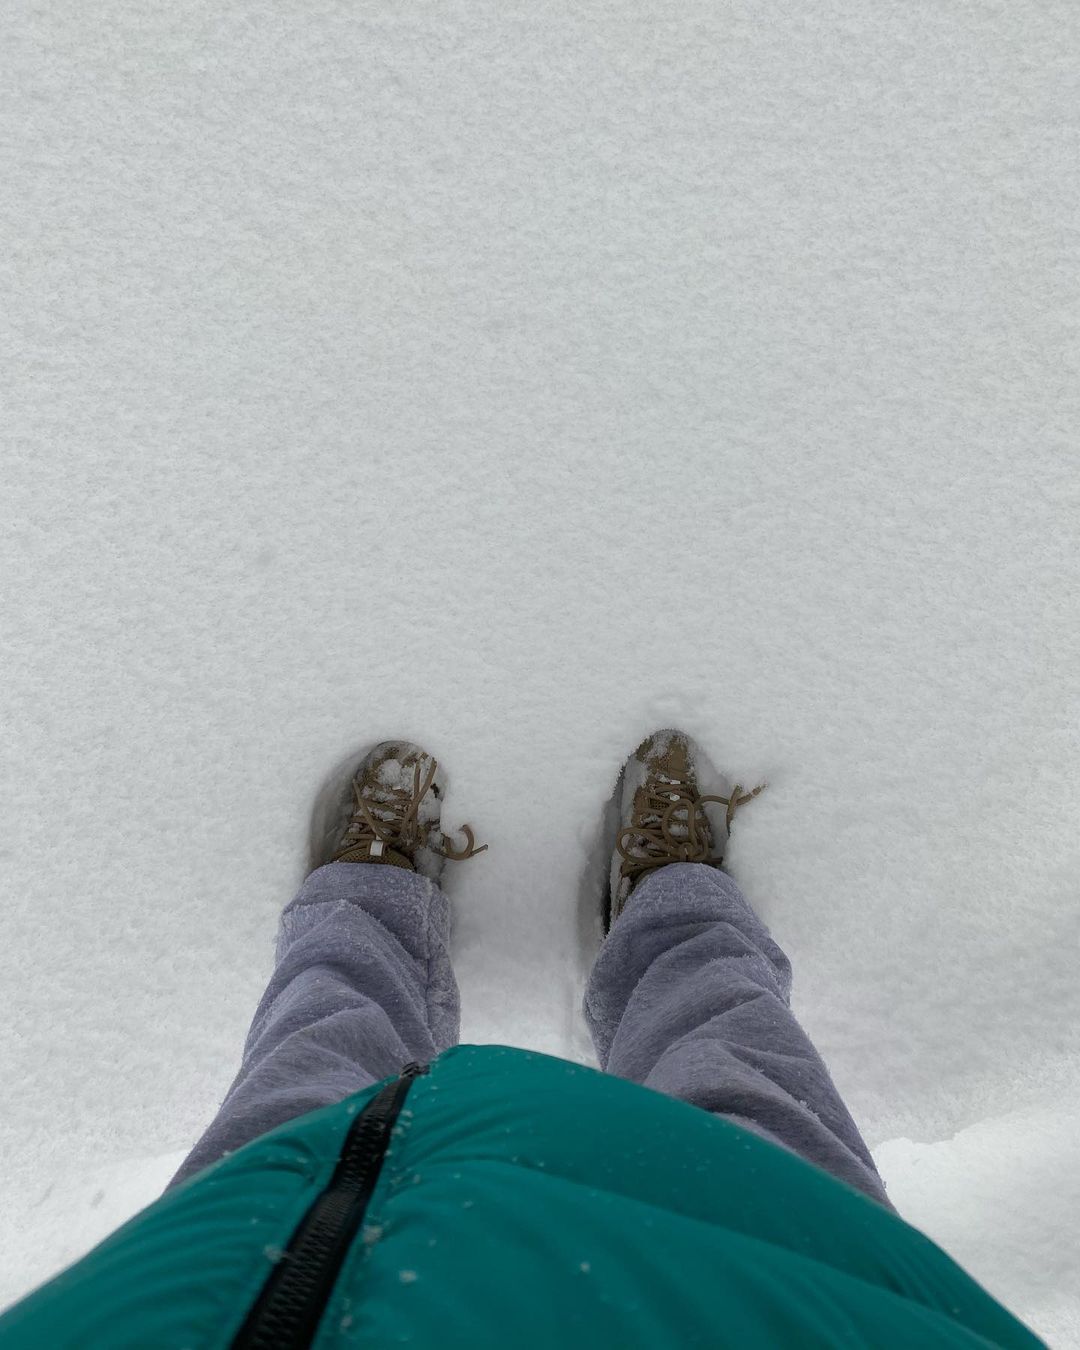 Photos n°2 : Emily Ratajkowski Enjoys a Snow Day!